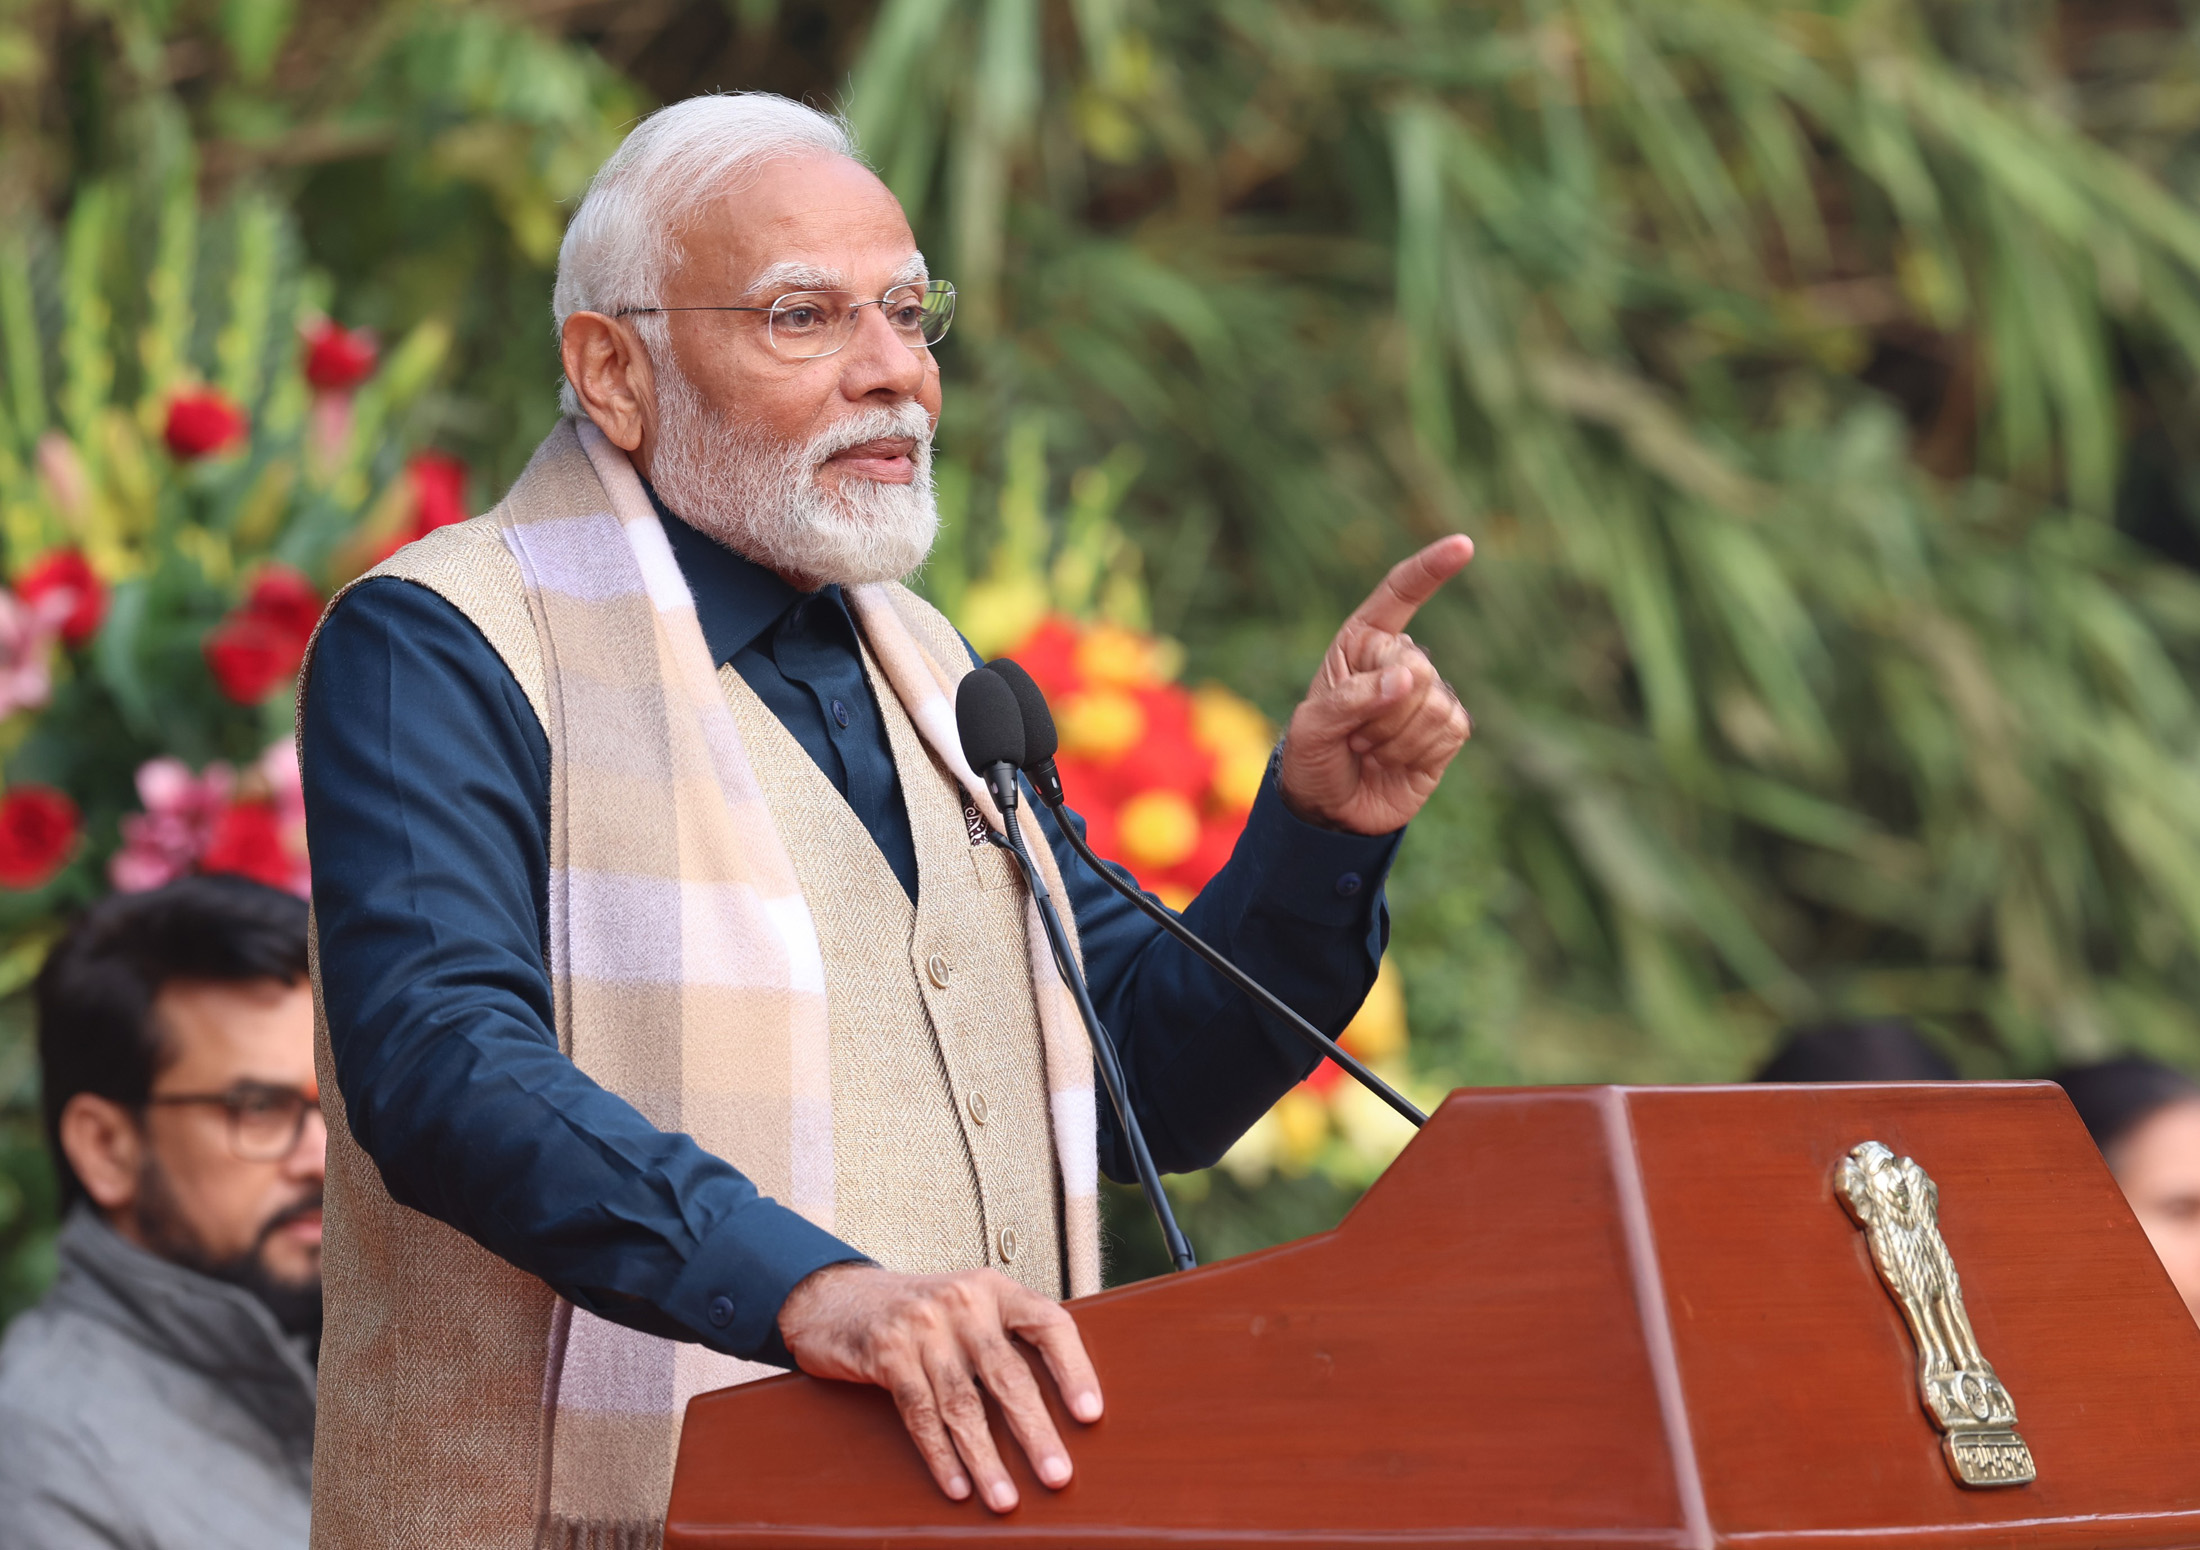 हिमाचल प्रदेश के लोगों को प्रधानमंत्री मोदी ने राज्यत्व दिवस पर शुभकामनाएं दीं